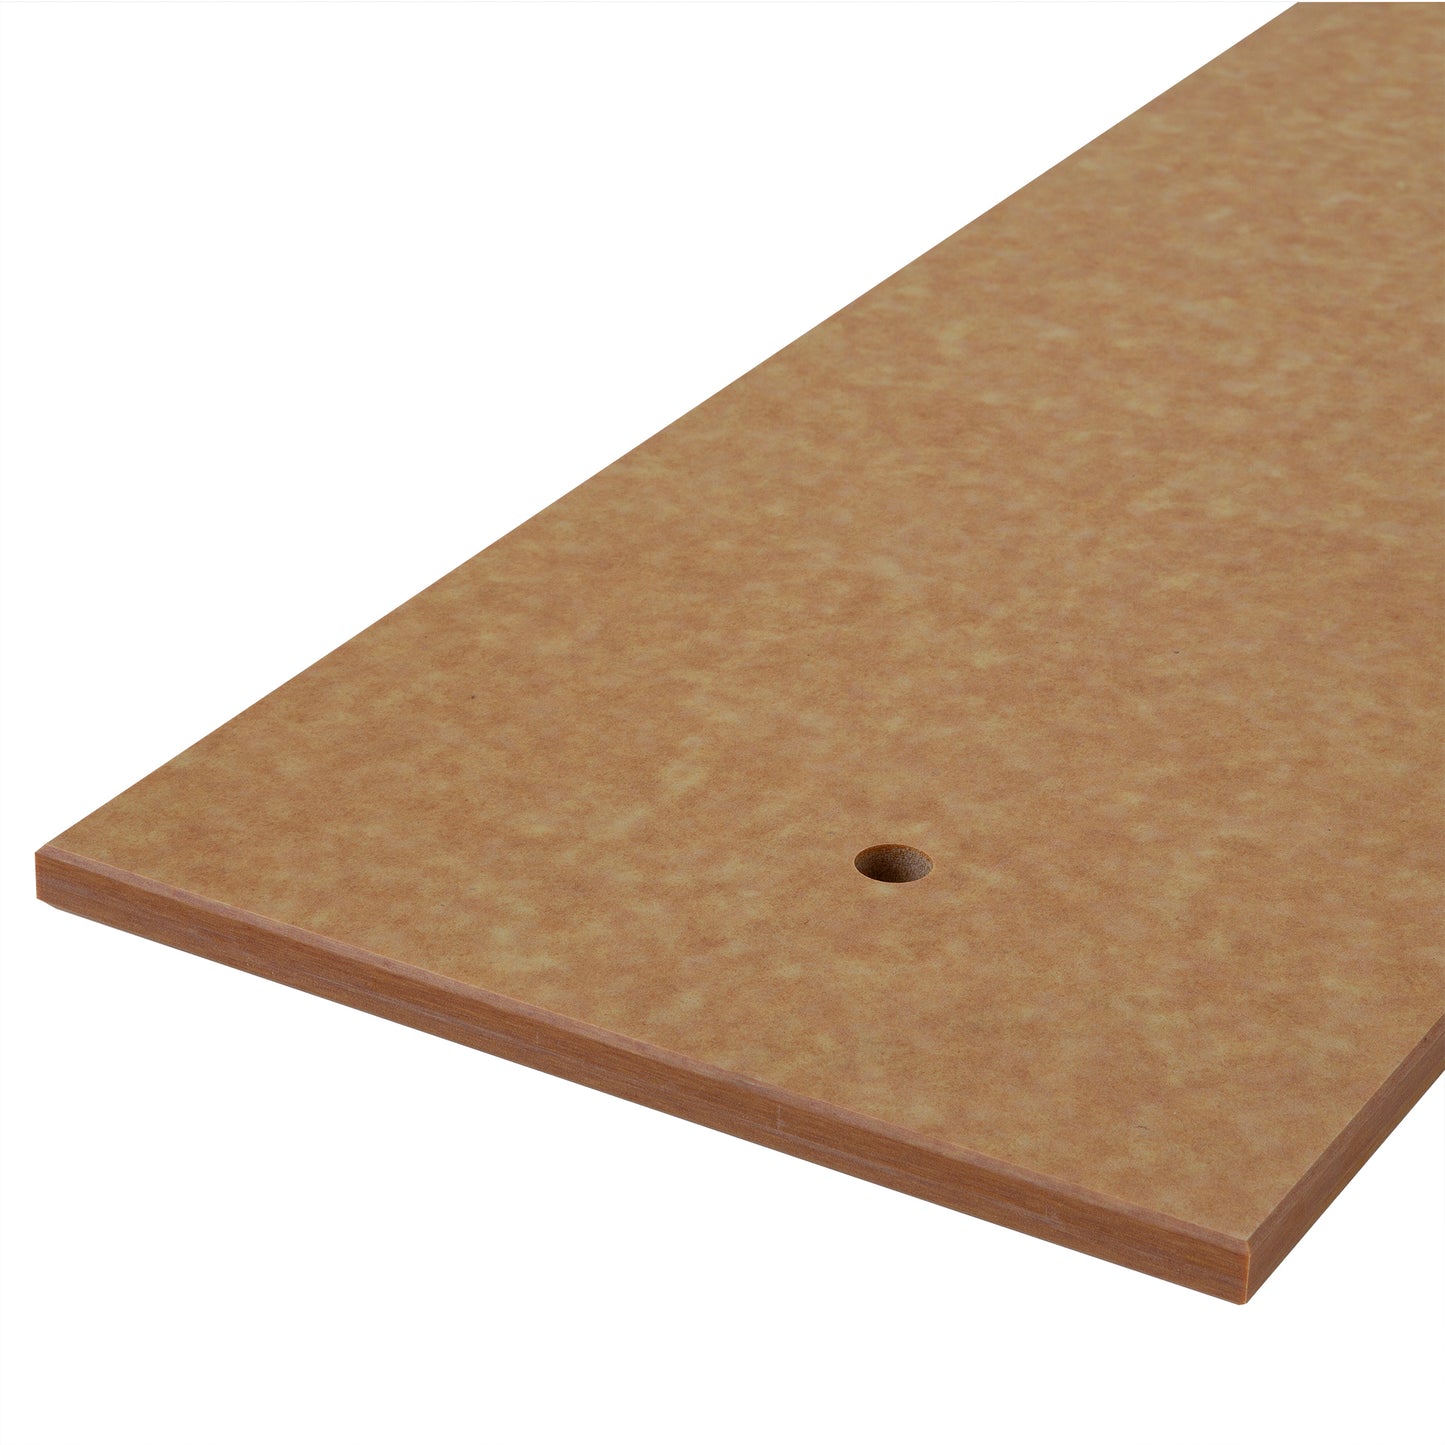 Composite wood-tone, pre-drilled cutting board - 1/2" X 11-3/4" X 36"" (SKU - 915151)